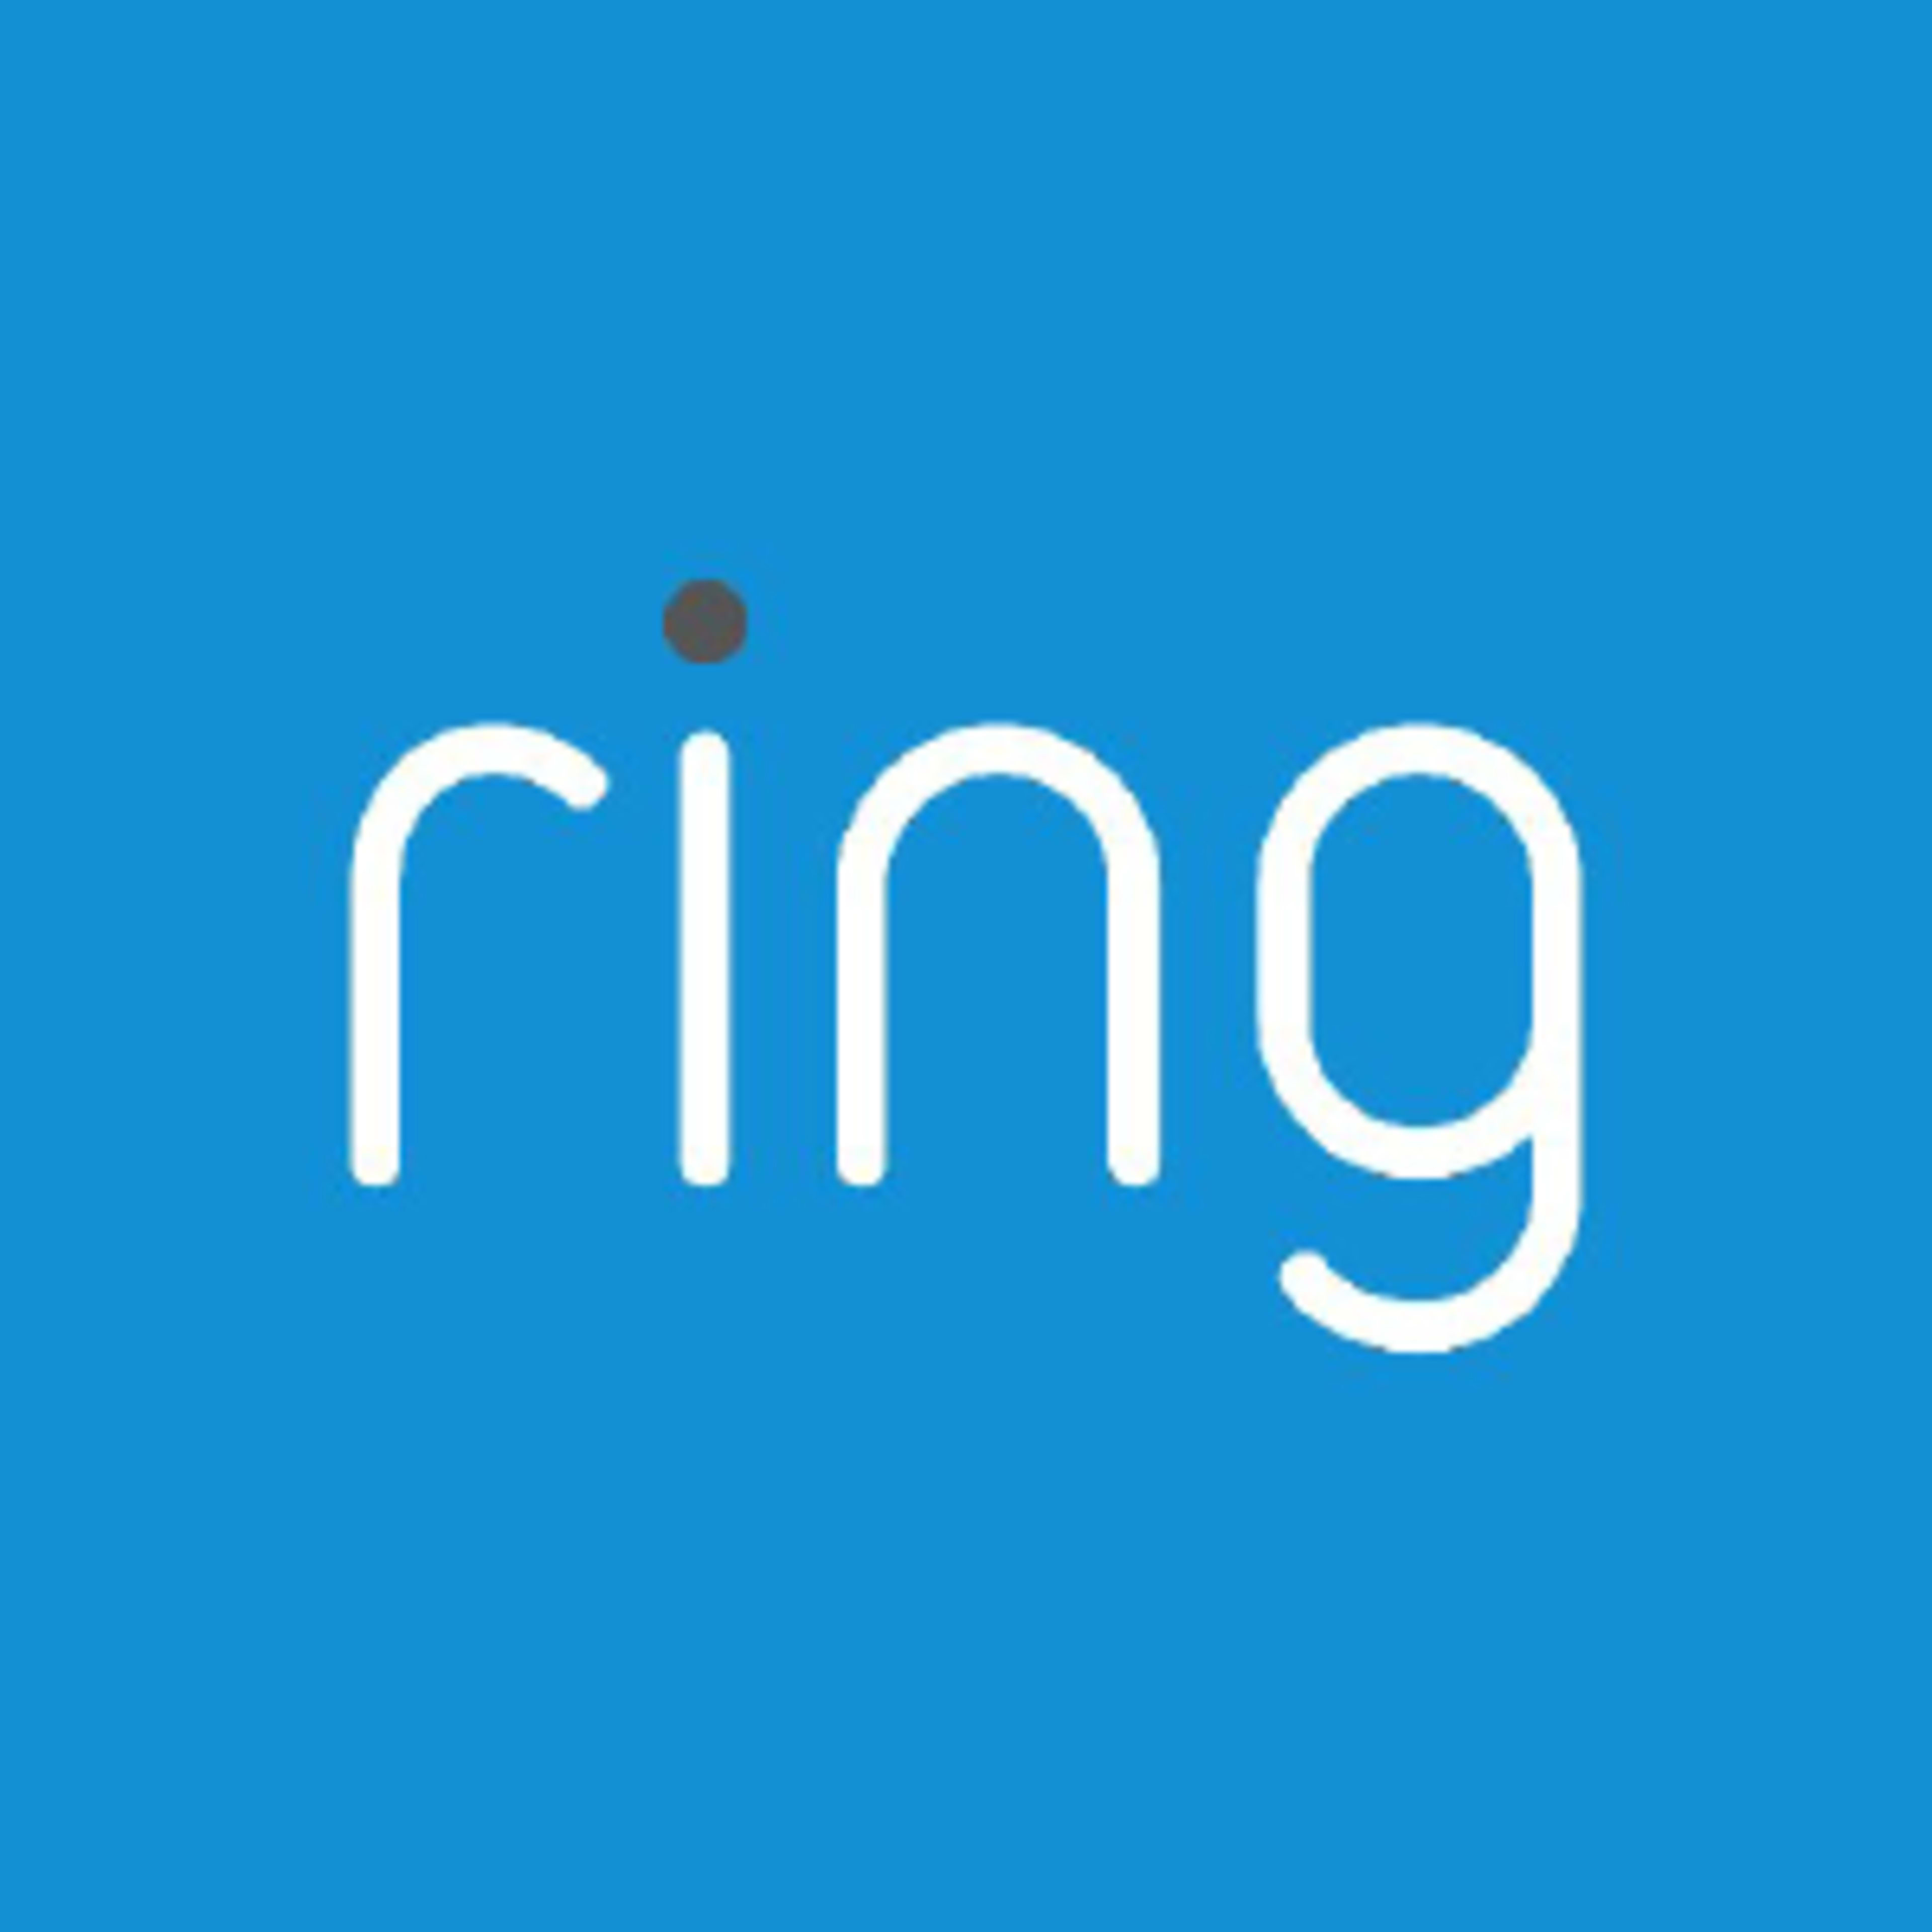 Ring Video Doorbell Code